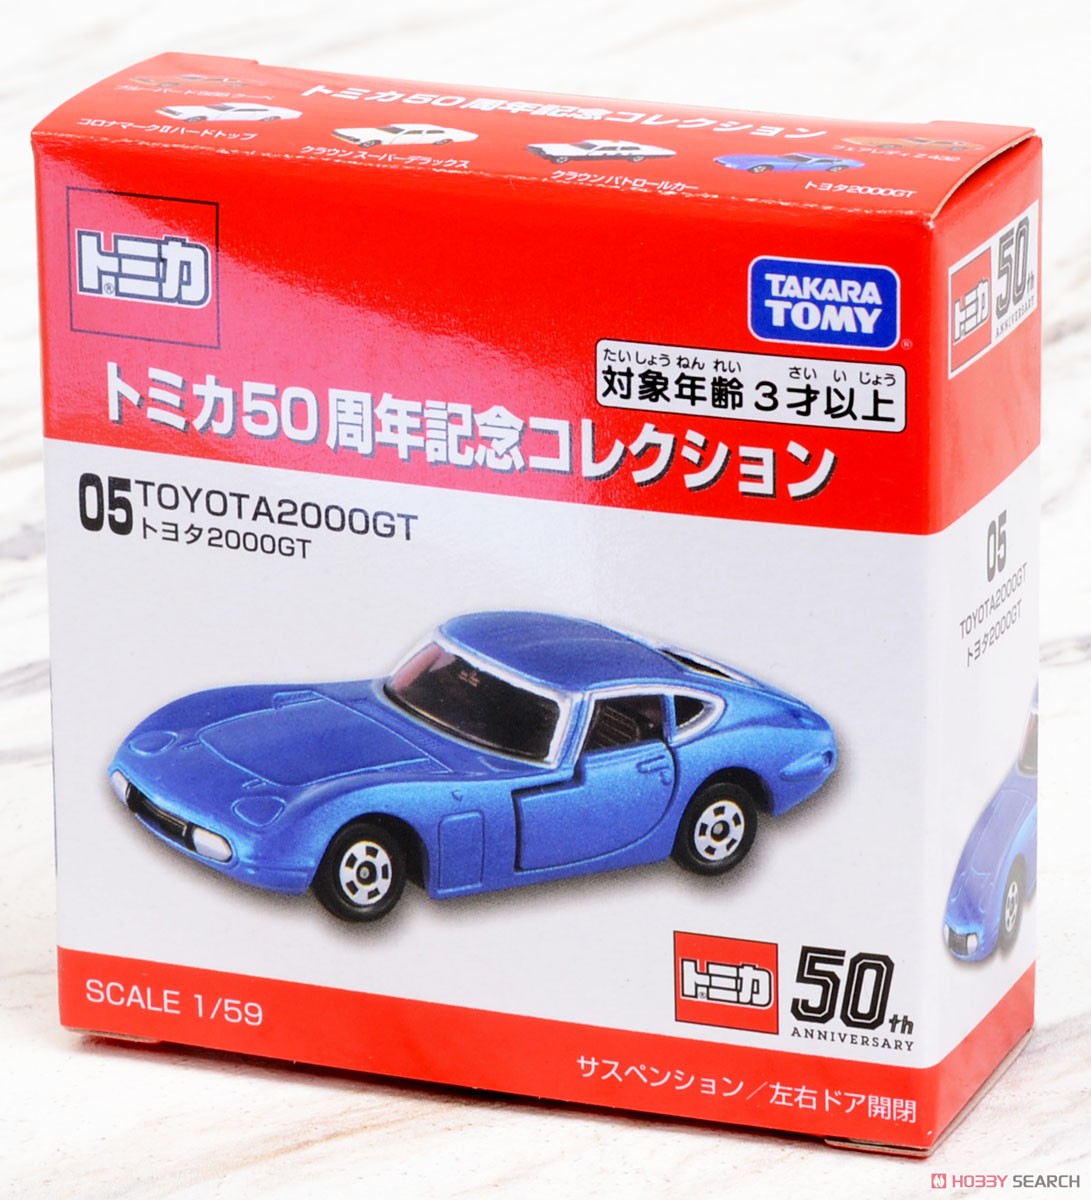 トミカ50周年記念コレクション 05 トヨタ2000GT (トミカ) パッケージ1